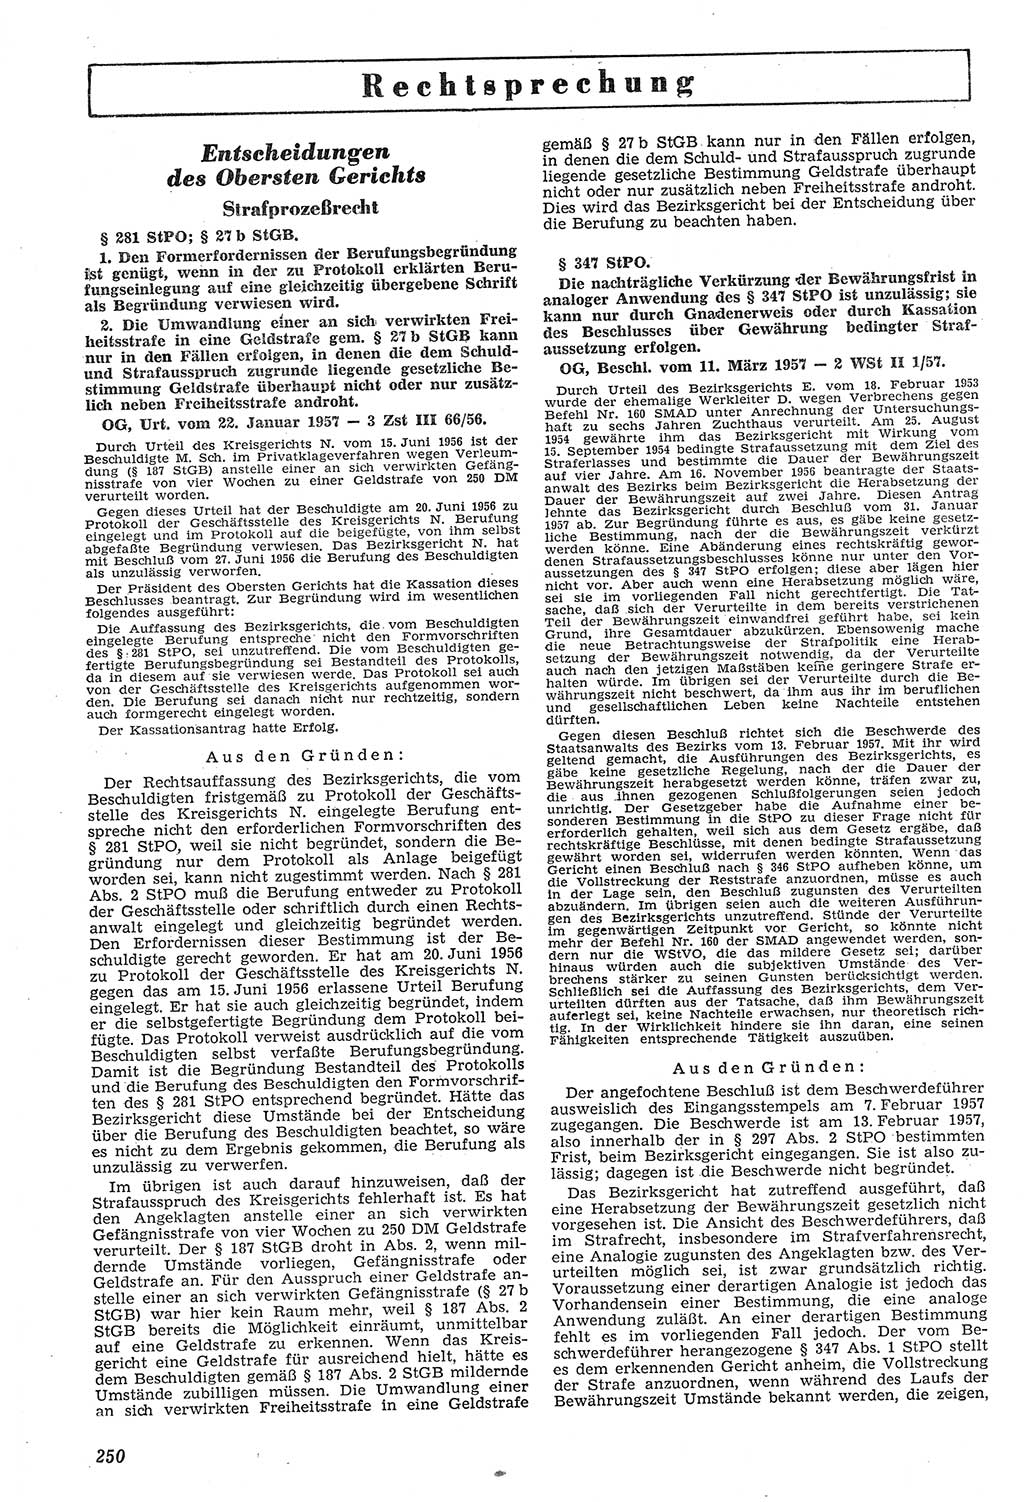 Neue Justiz (NJ), Zeitschrift für Recht und Rechtswissenschaft [Deutsche Demokratische Republik (DDR)], 11. Jahrgang 1957, Seite 250 (NJ DDR 1957, S. 250)